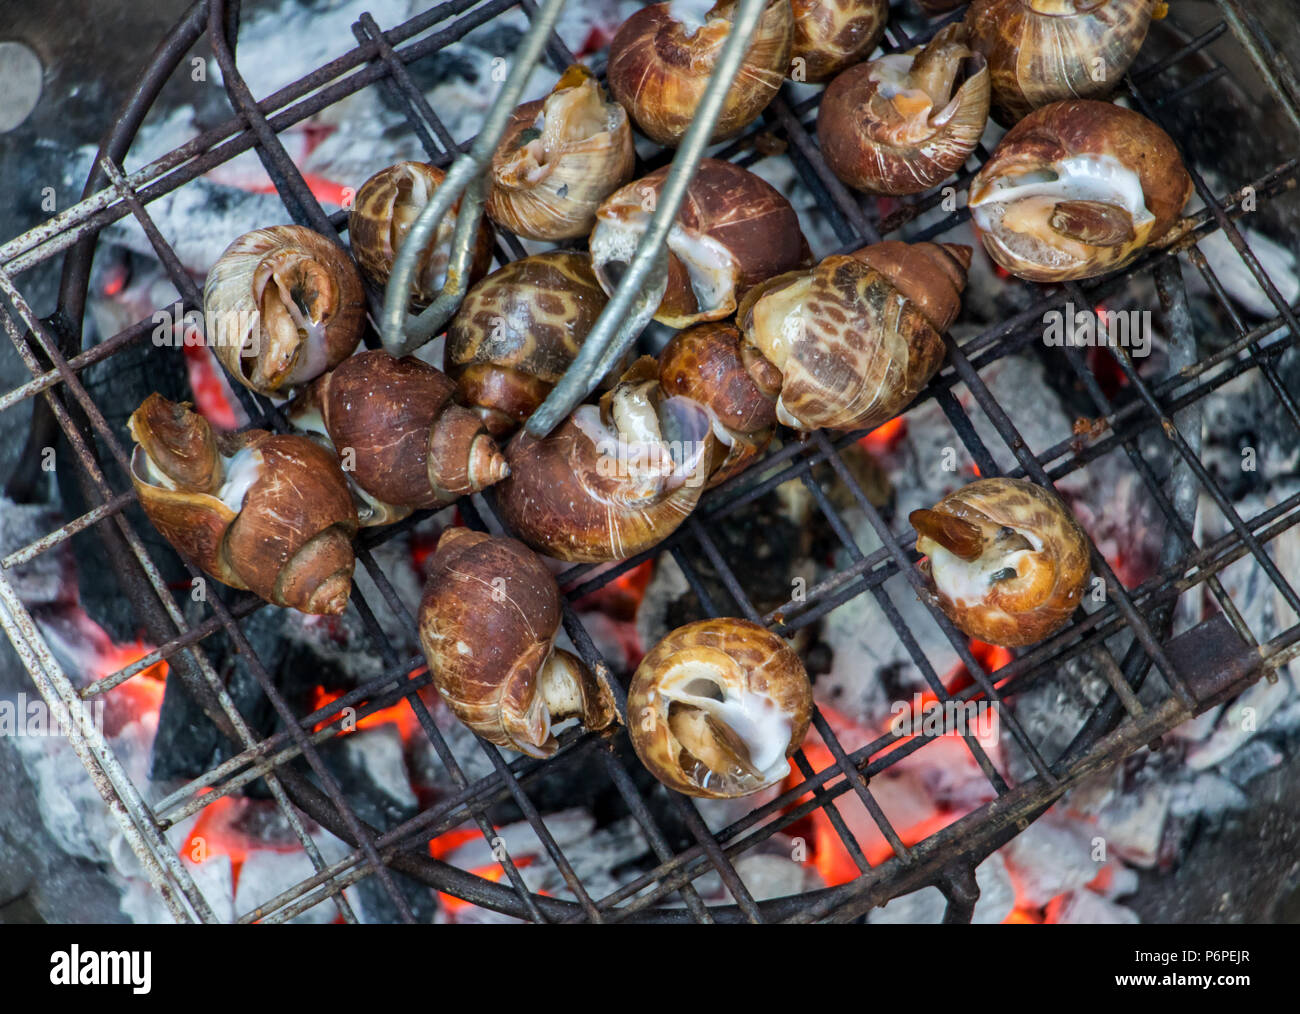 Les escargots sont griller sur le grill. Grille de cuisson sur les escargots sur charbon. Banque D'Images